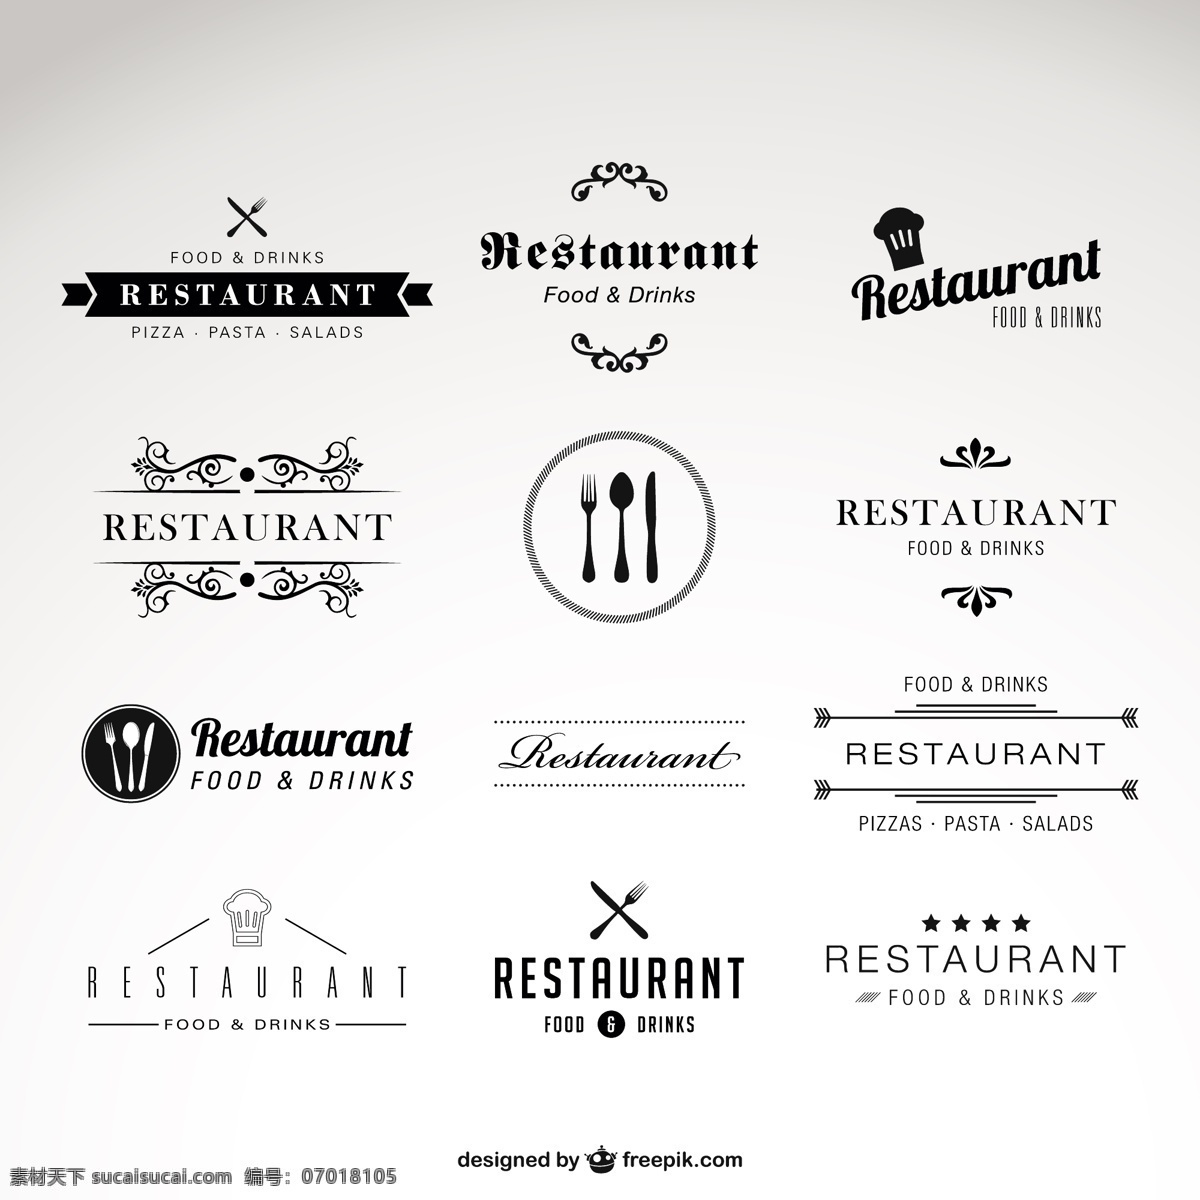 餐厅标志集合 标识 年份 食品 图标 餐厅 复古 模板 厨师 老式标志 徽章 标志 文本 图形 布局 饮料 平面设计 白色